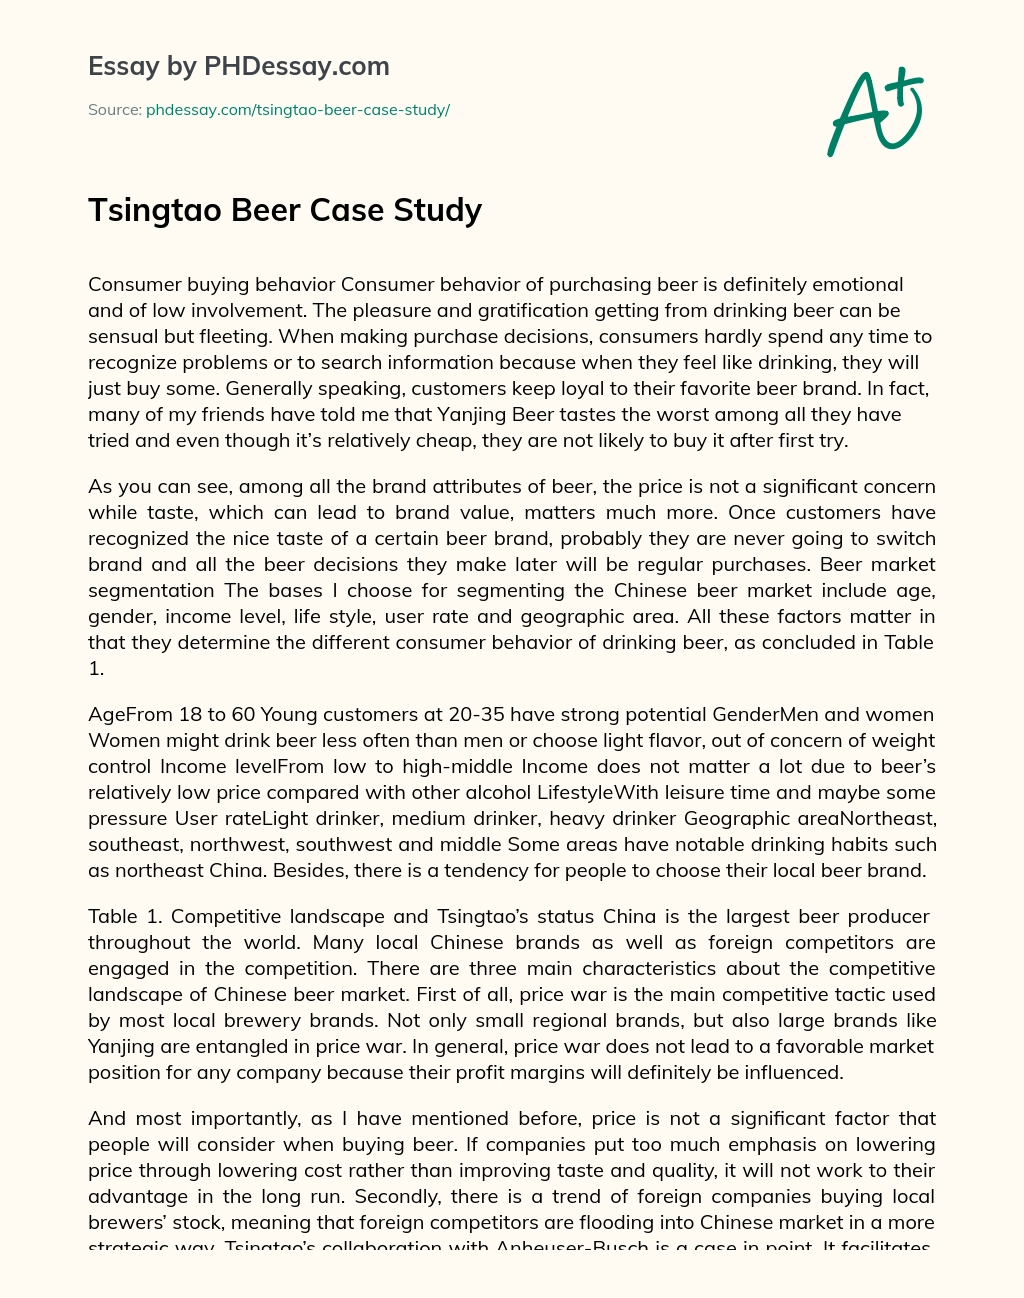 Tsingtao Beer Case Study essay